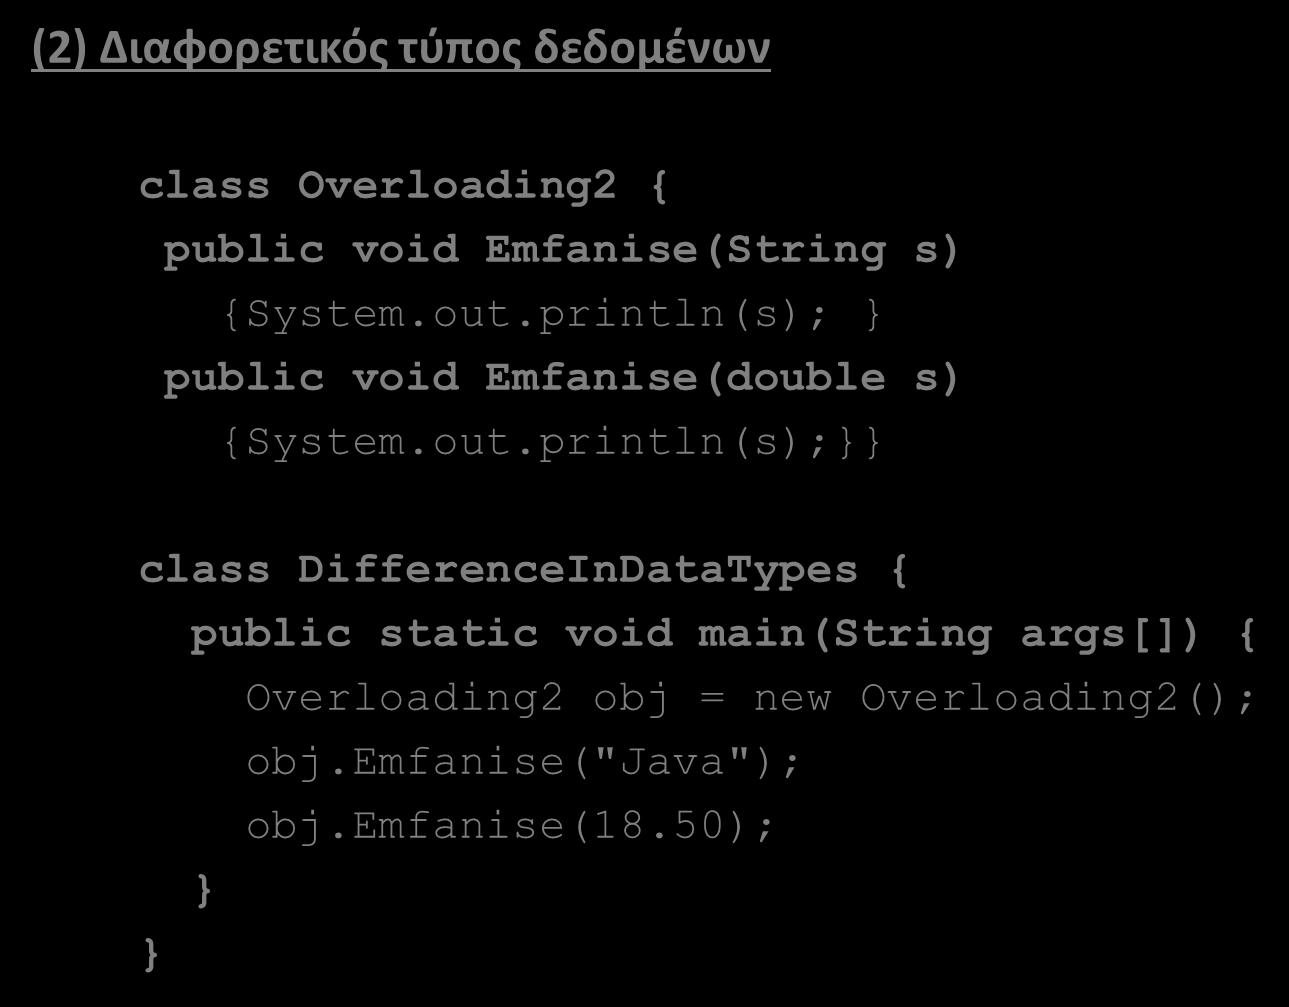 Υπερφόρτωση μεθόδων (method overloading)(2/7) (2) Διαφορετικός τύπος δεδομένων class Overloading2 { public void Emfanise(String s) {System.out.